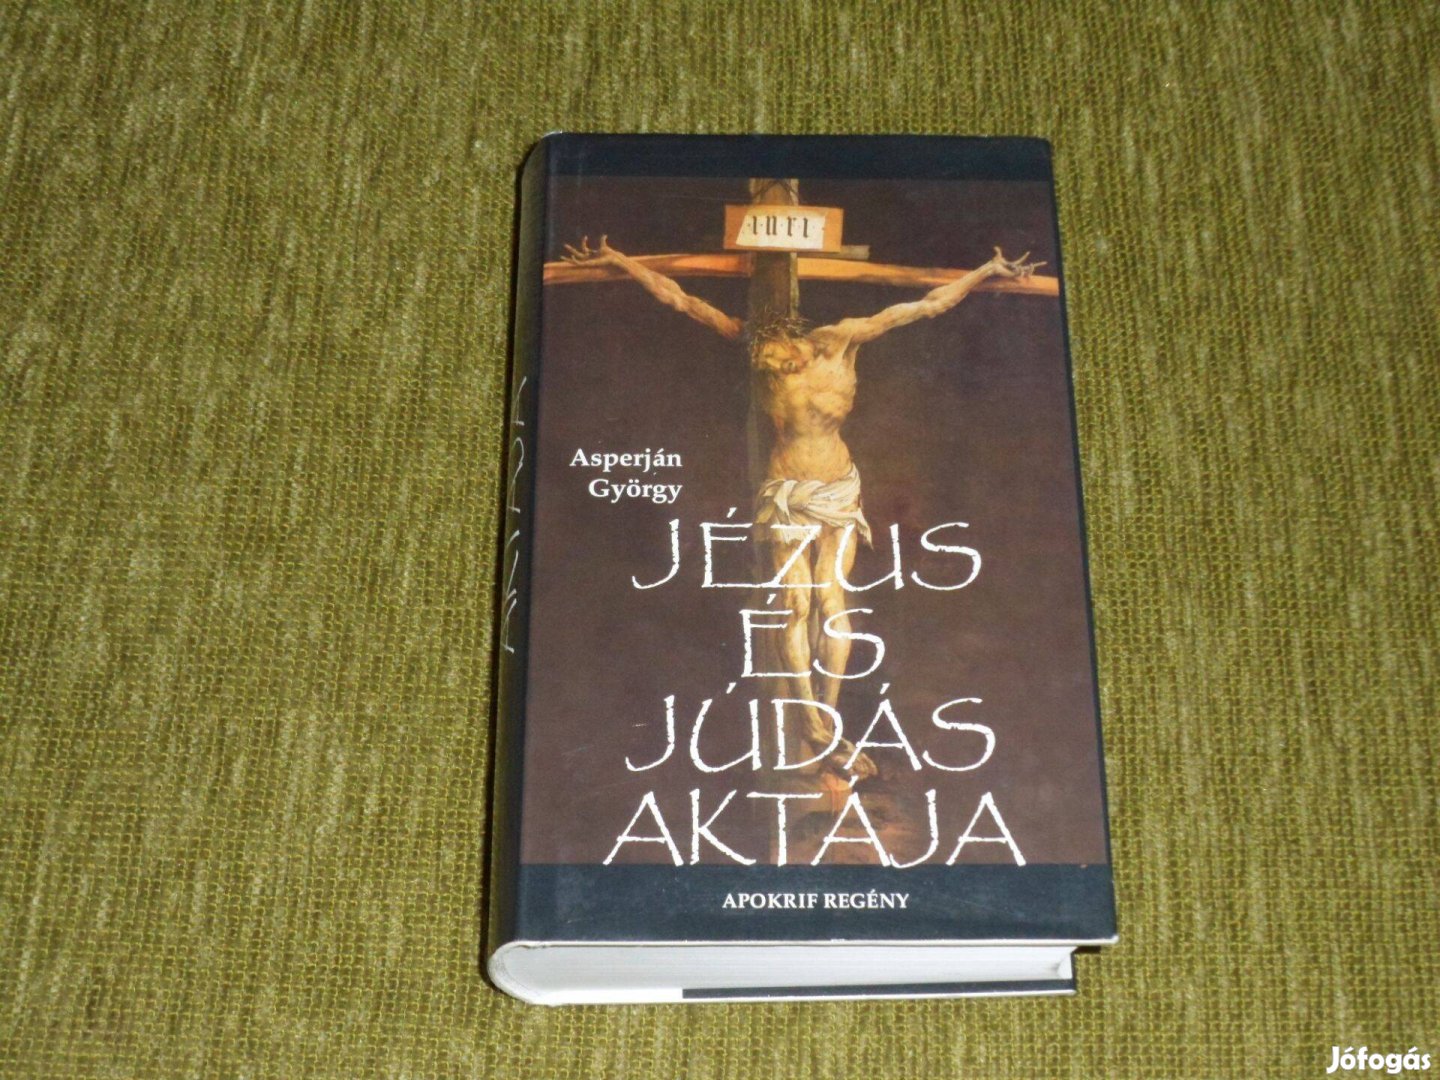 Asperján György: Jézus és Júdás aktája - Apokrif regény